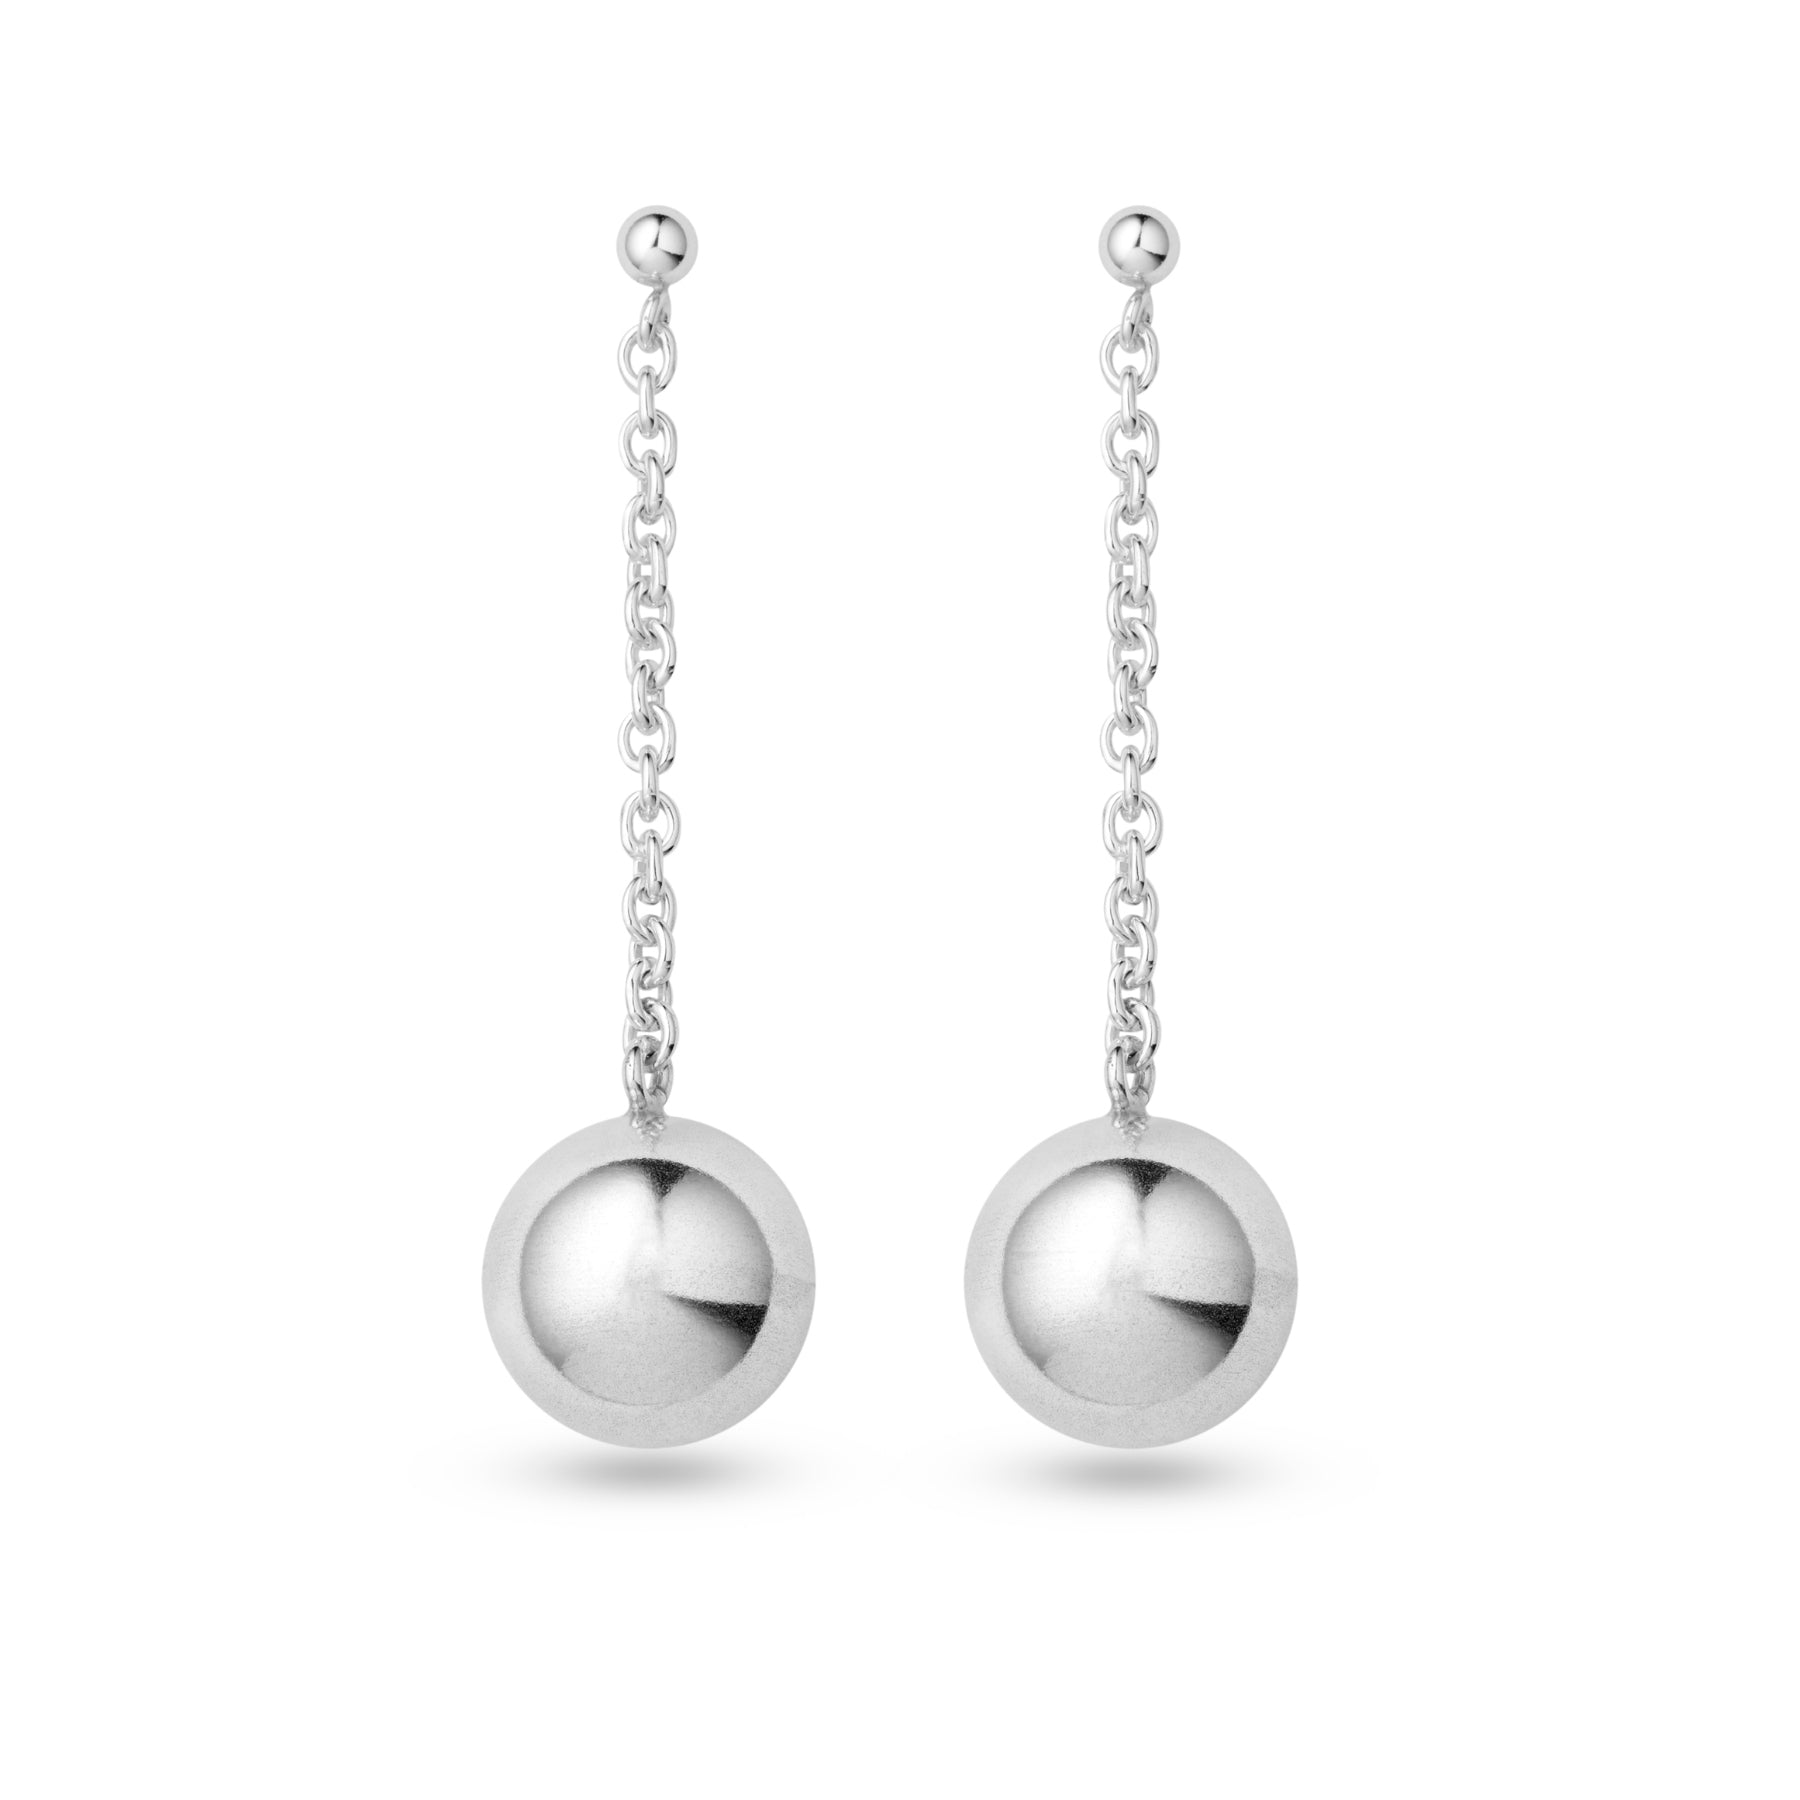 Globe pendant earrings in silver